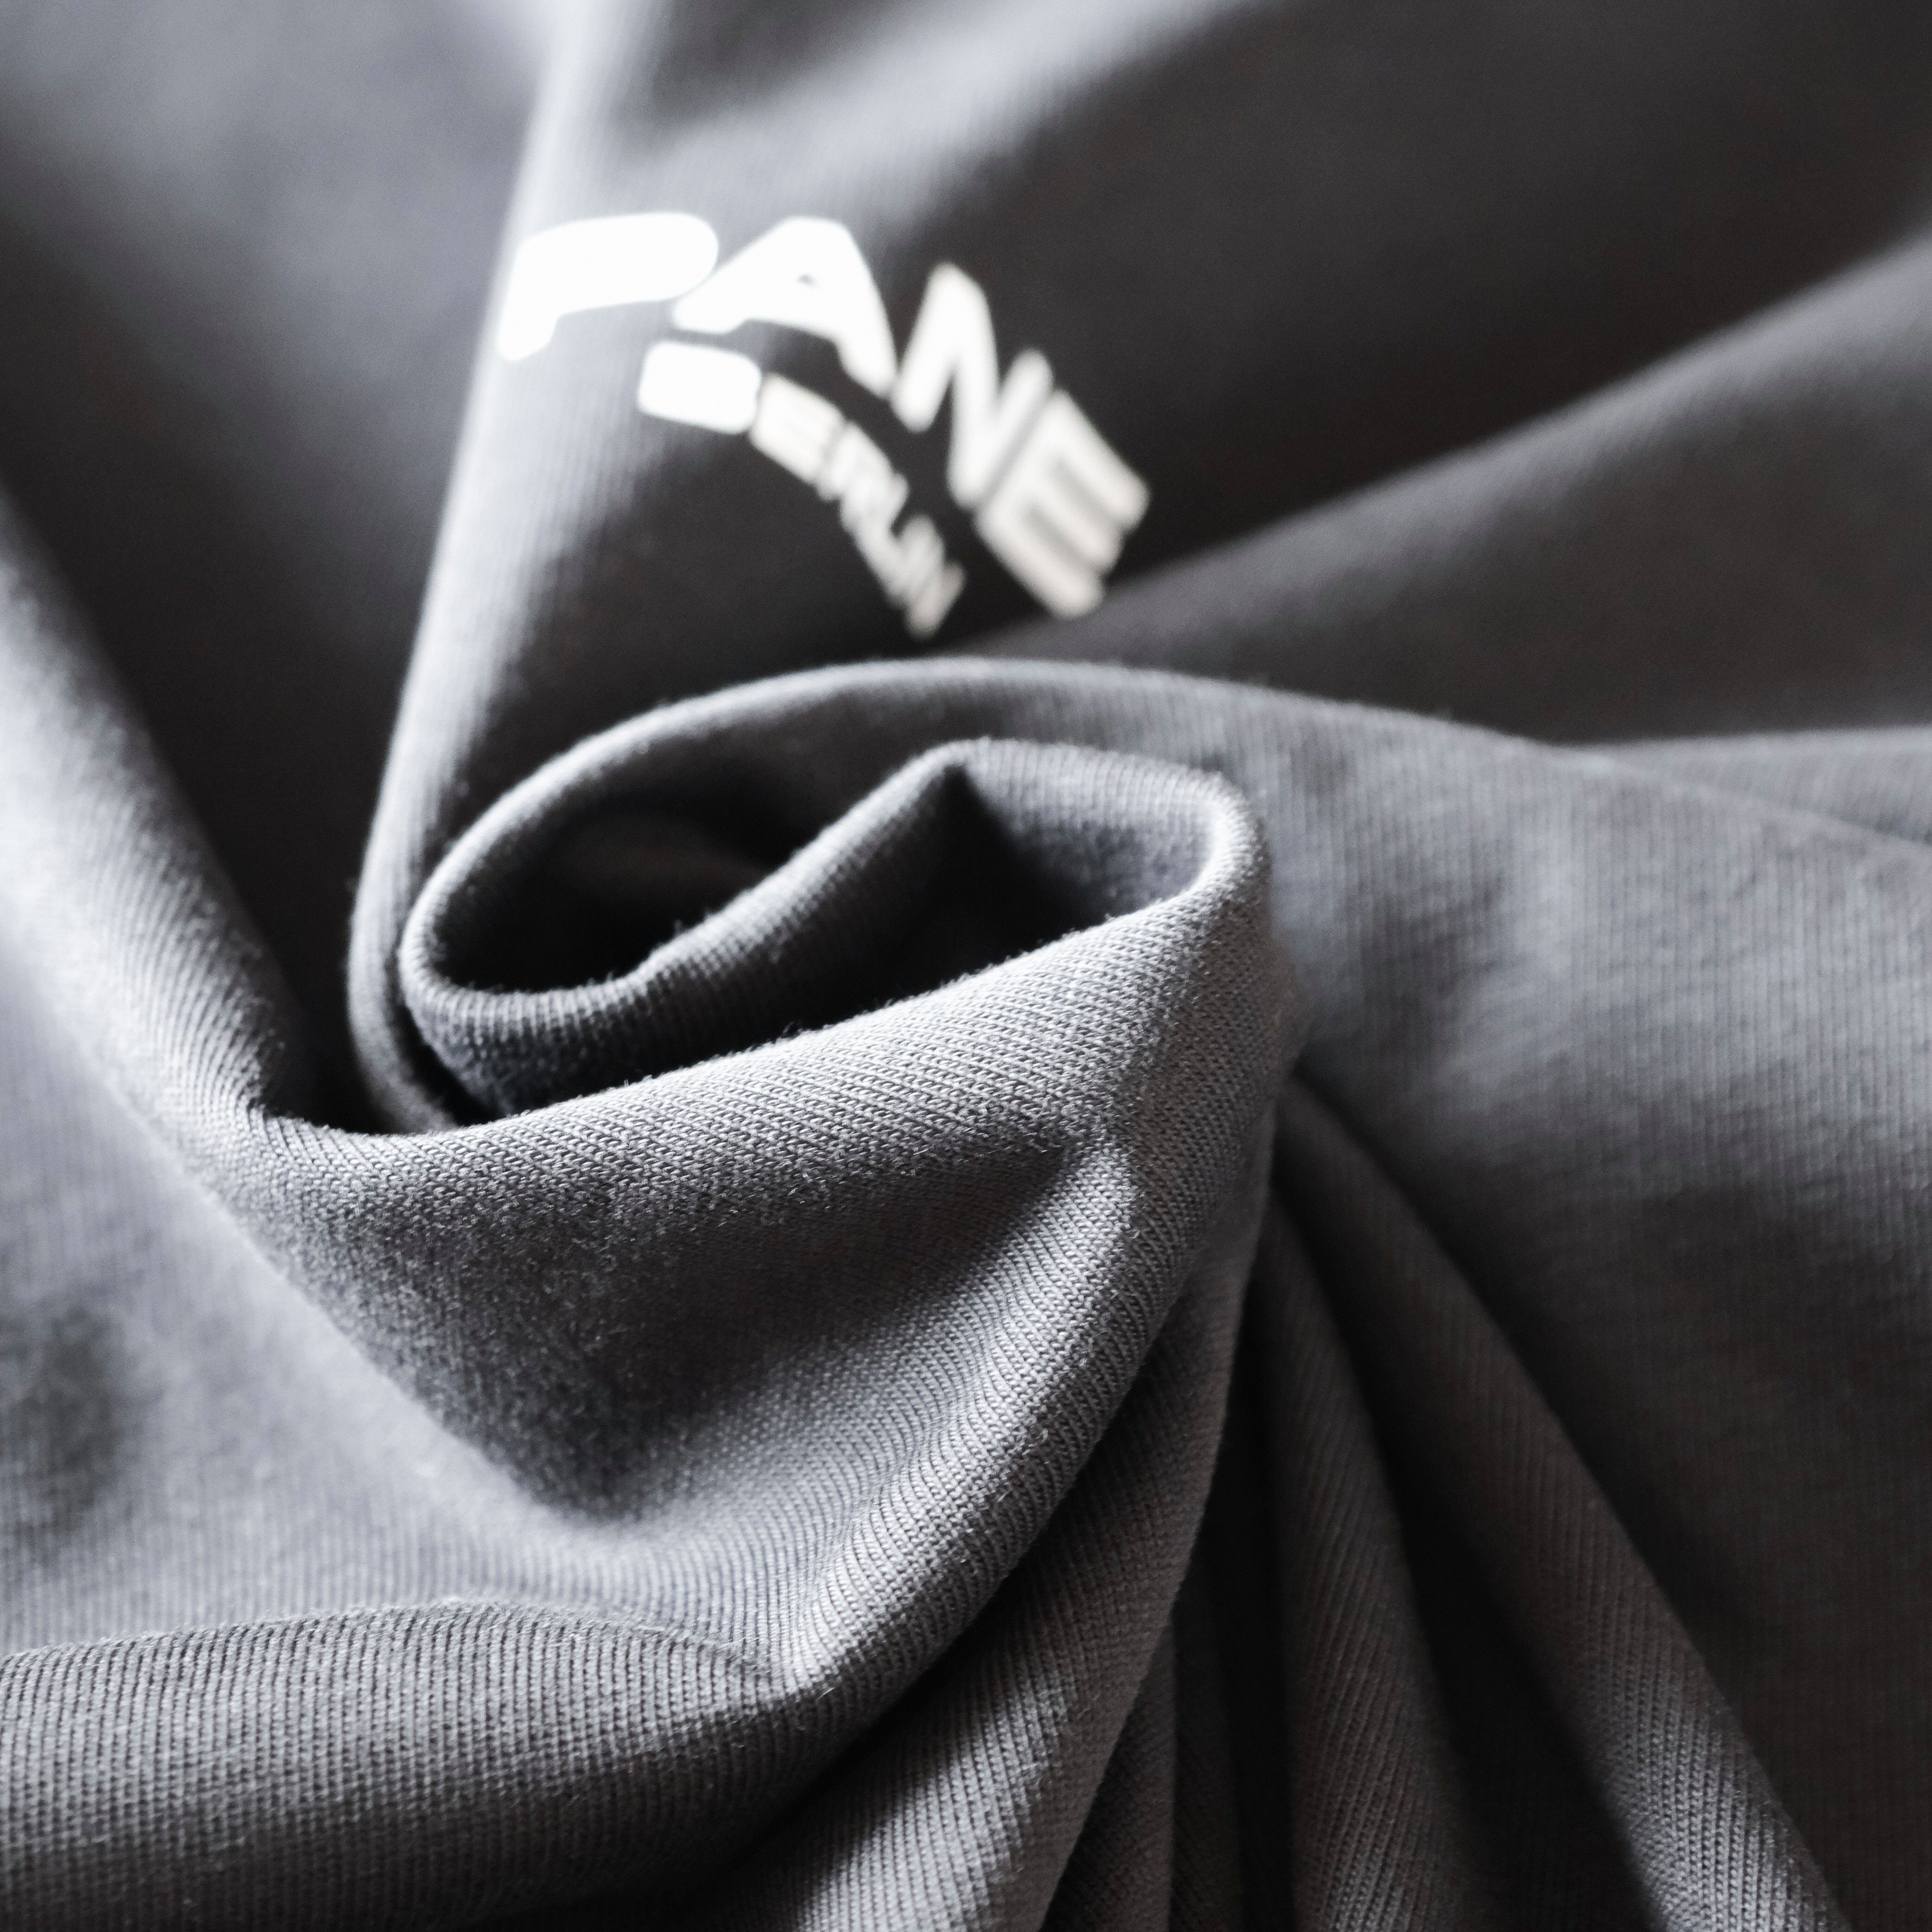 PANE CLOTHING BLACK Print, Unifarben, in Rundhalsausschnitt Oversize-Shirt OVER mit TAKE mit